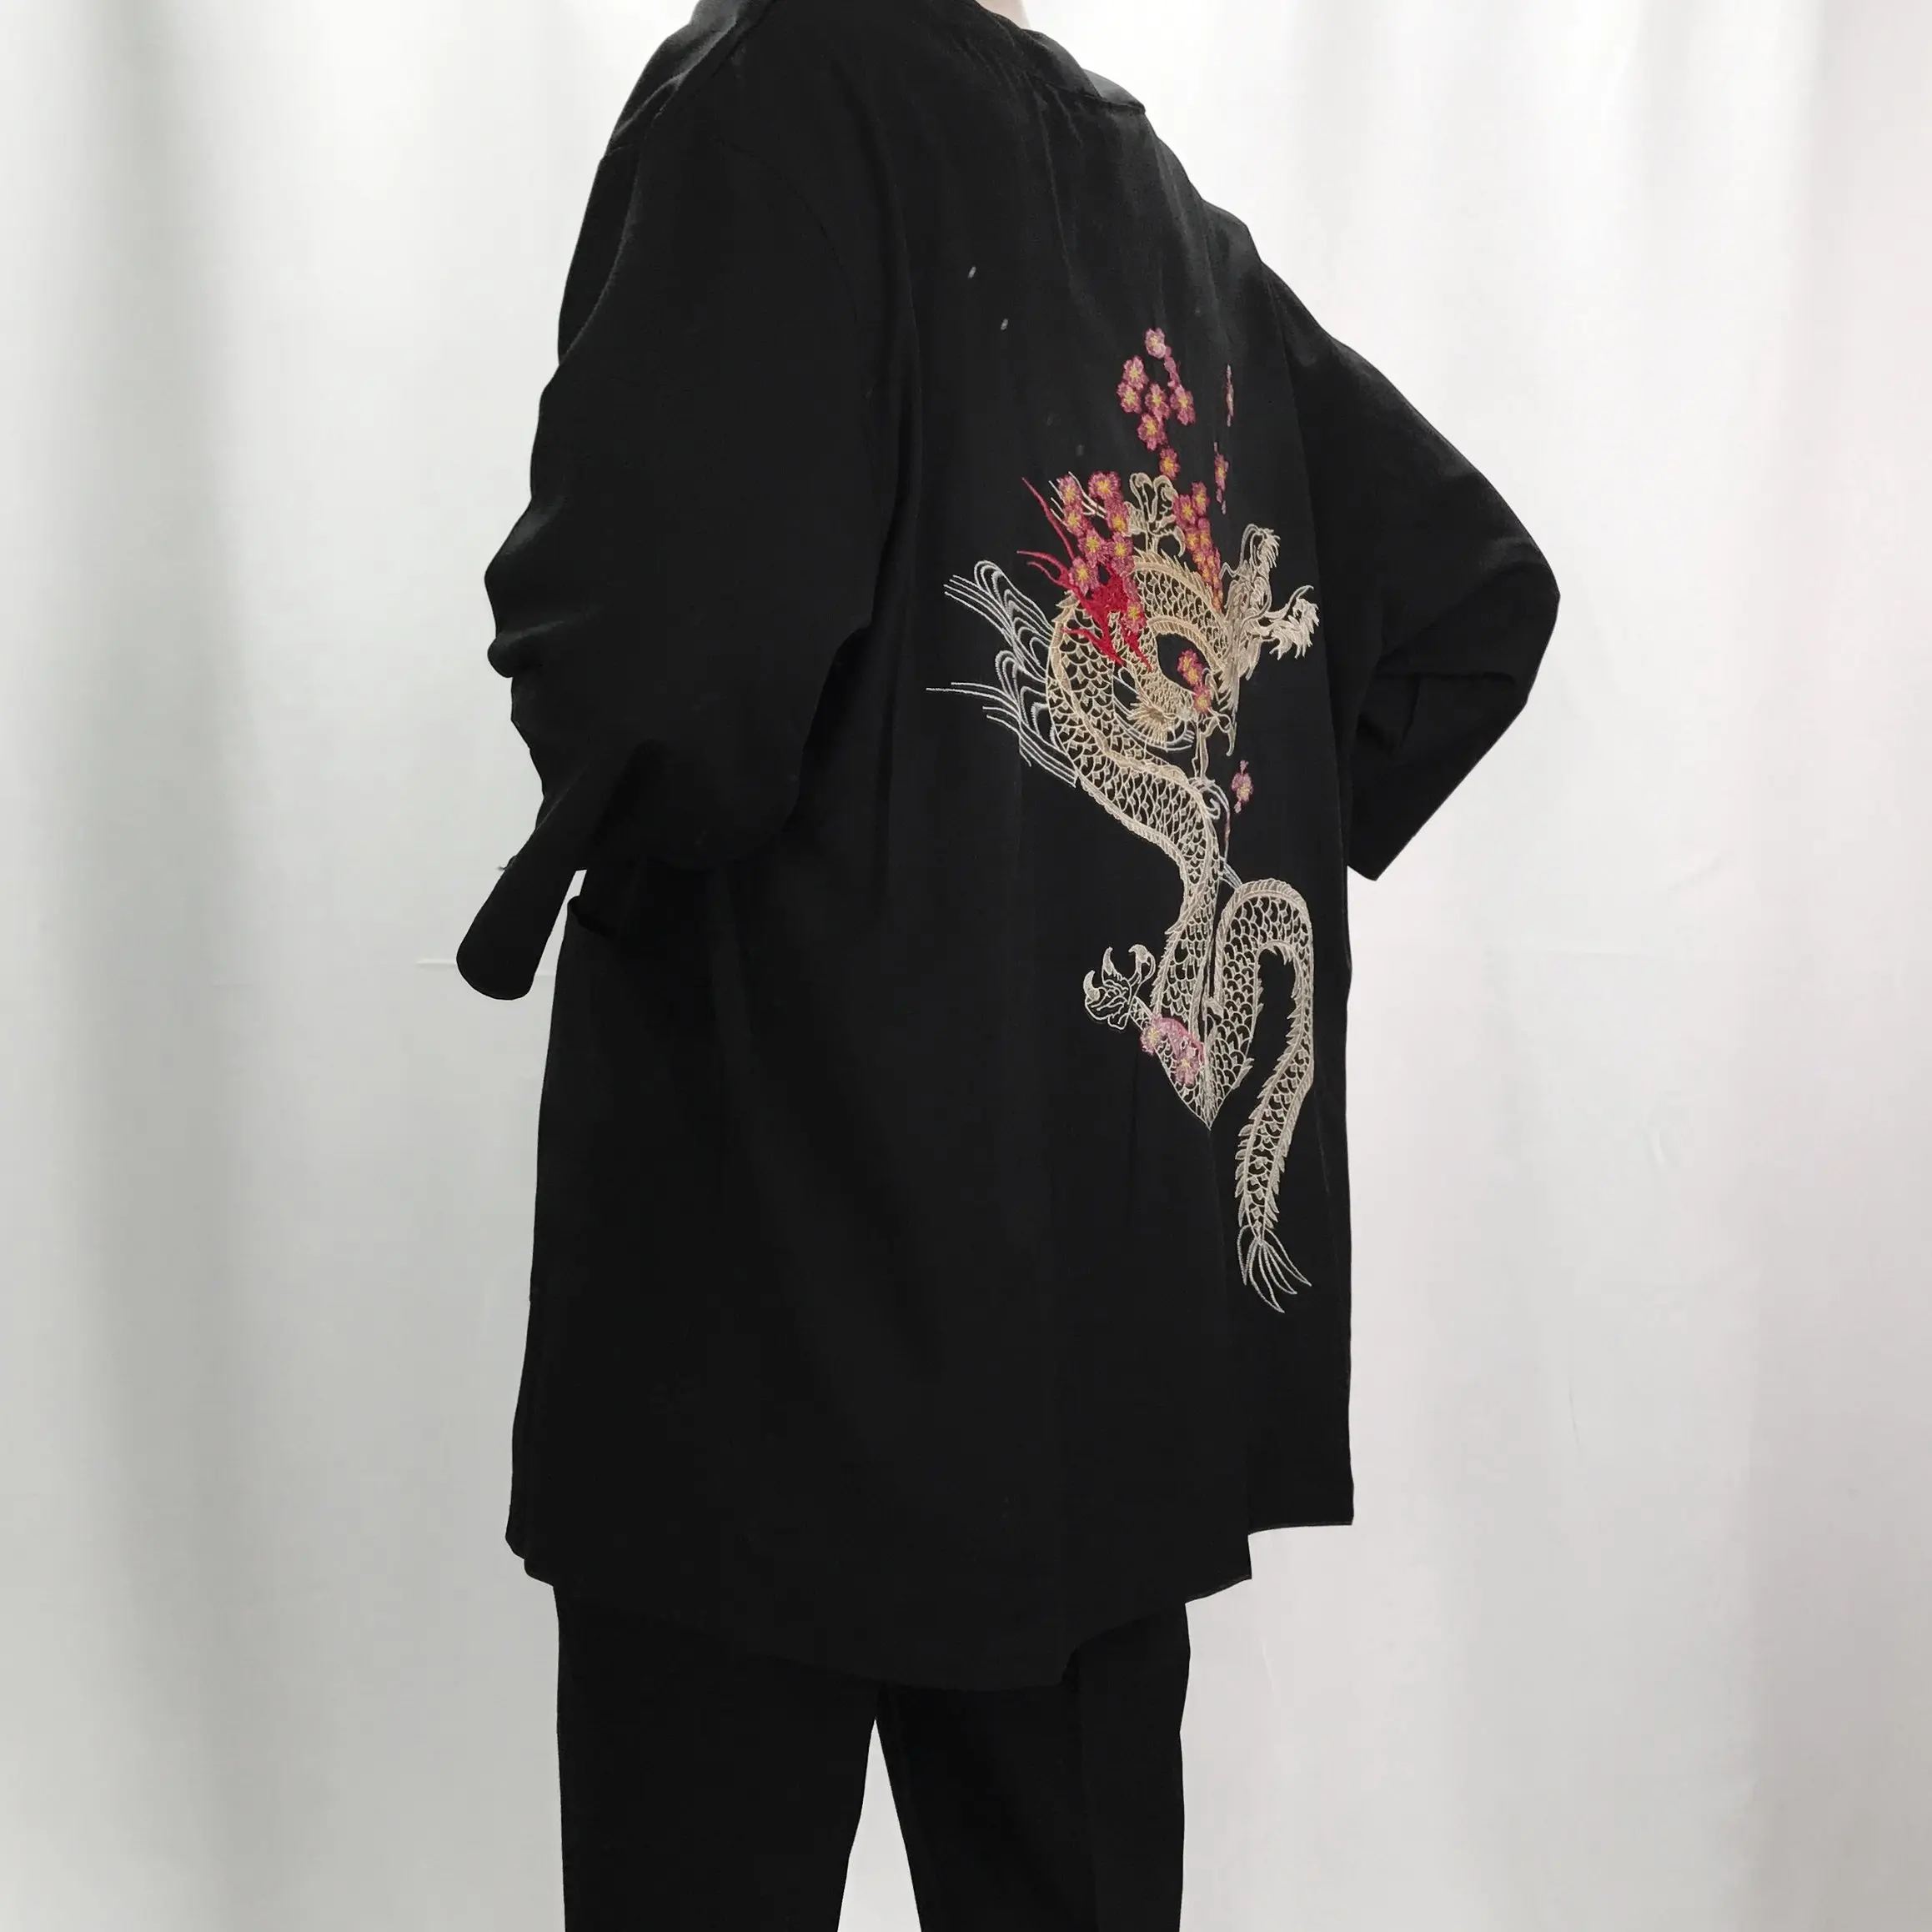 Hombre ropa de kimono chaquetas de los hombres ropa de cama de algodón chaquetas irregular kimono bordado chino tops cardigan hanfu indio outwear 2